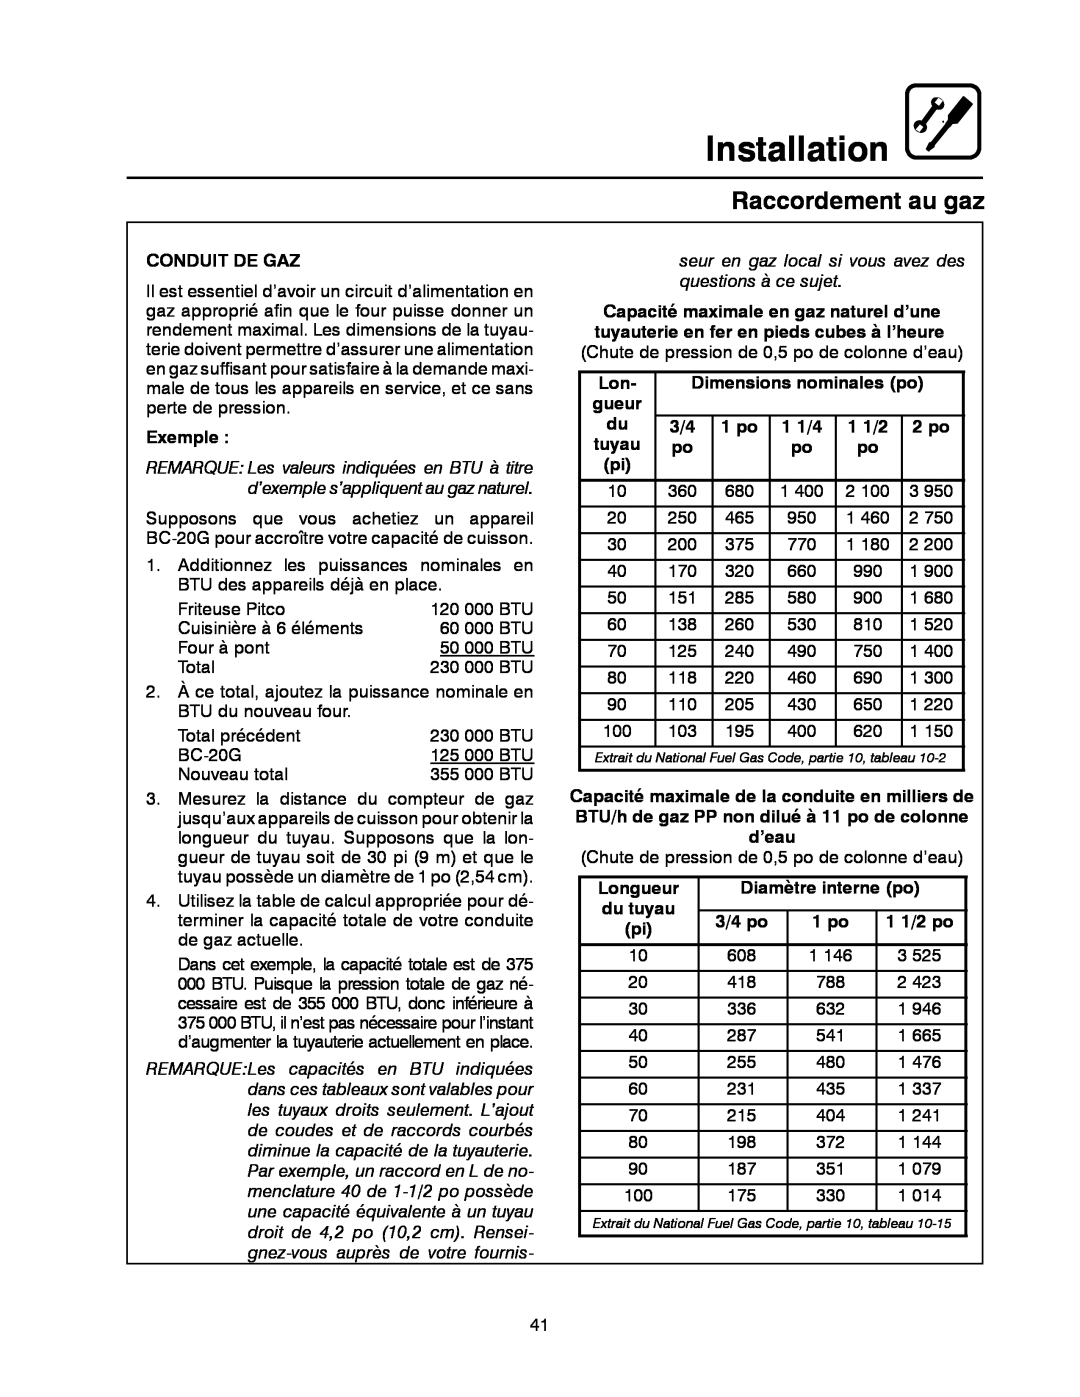 Blodgett BC-20G Raccordement au gaz, Installation, Conduit De Gaz, Exemple, Dimensions nominales po, gueur, 1 po, 1 1/4 